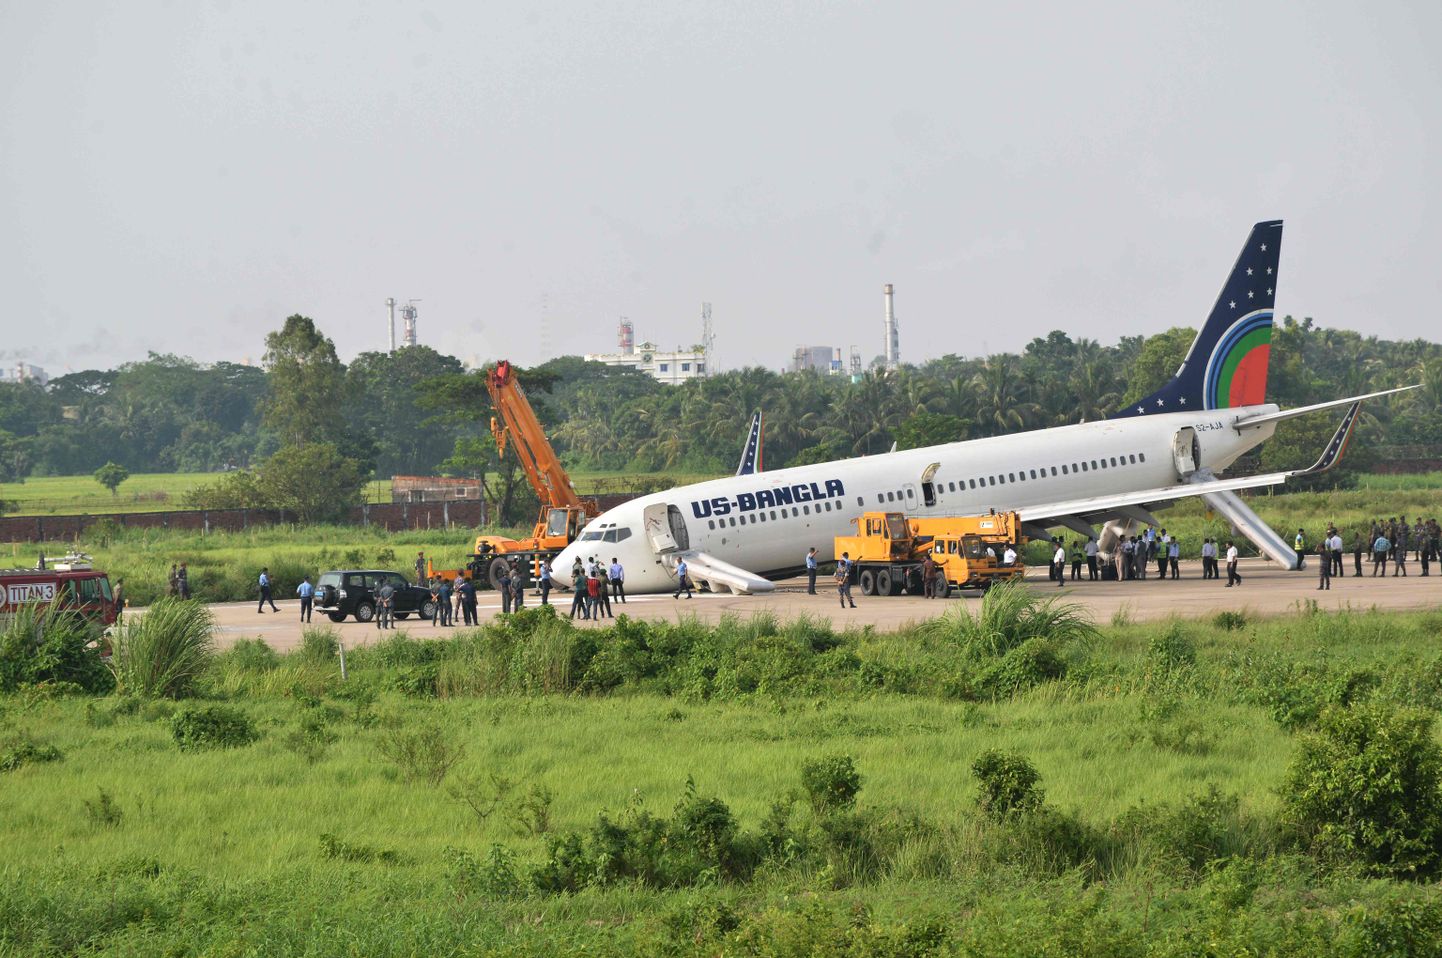 US-Bangla lennuk pärast hädamaandumist